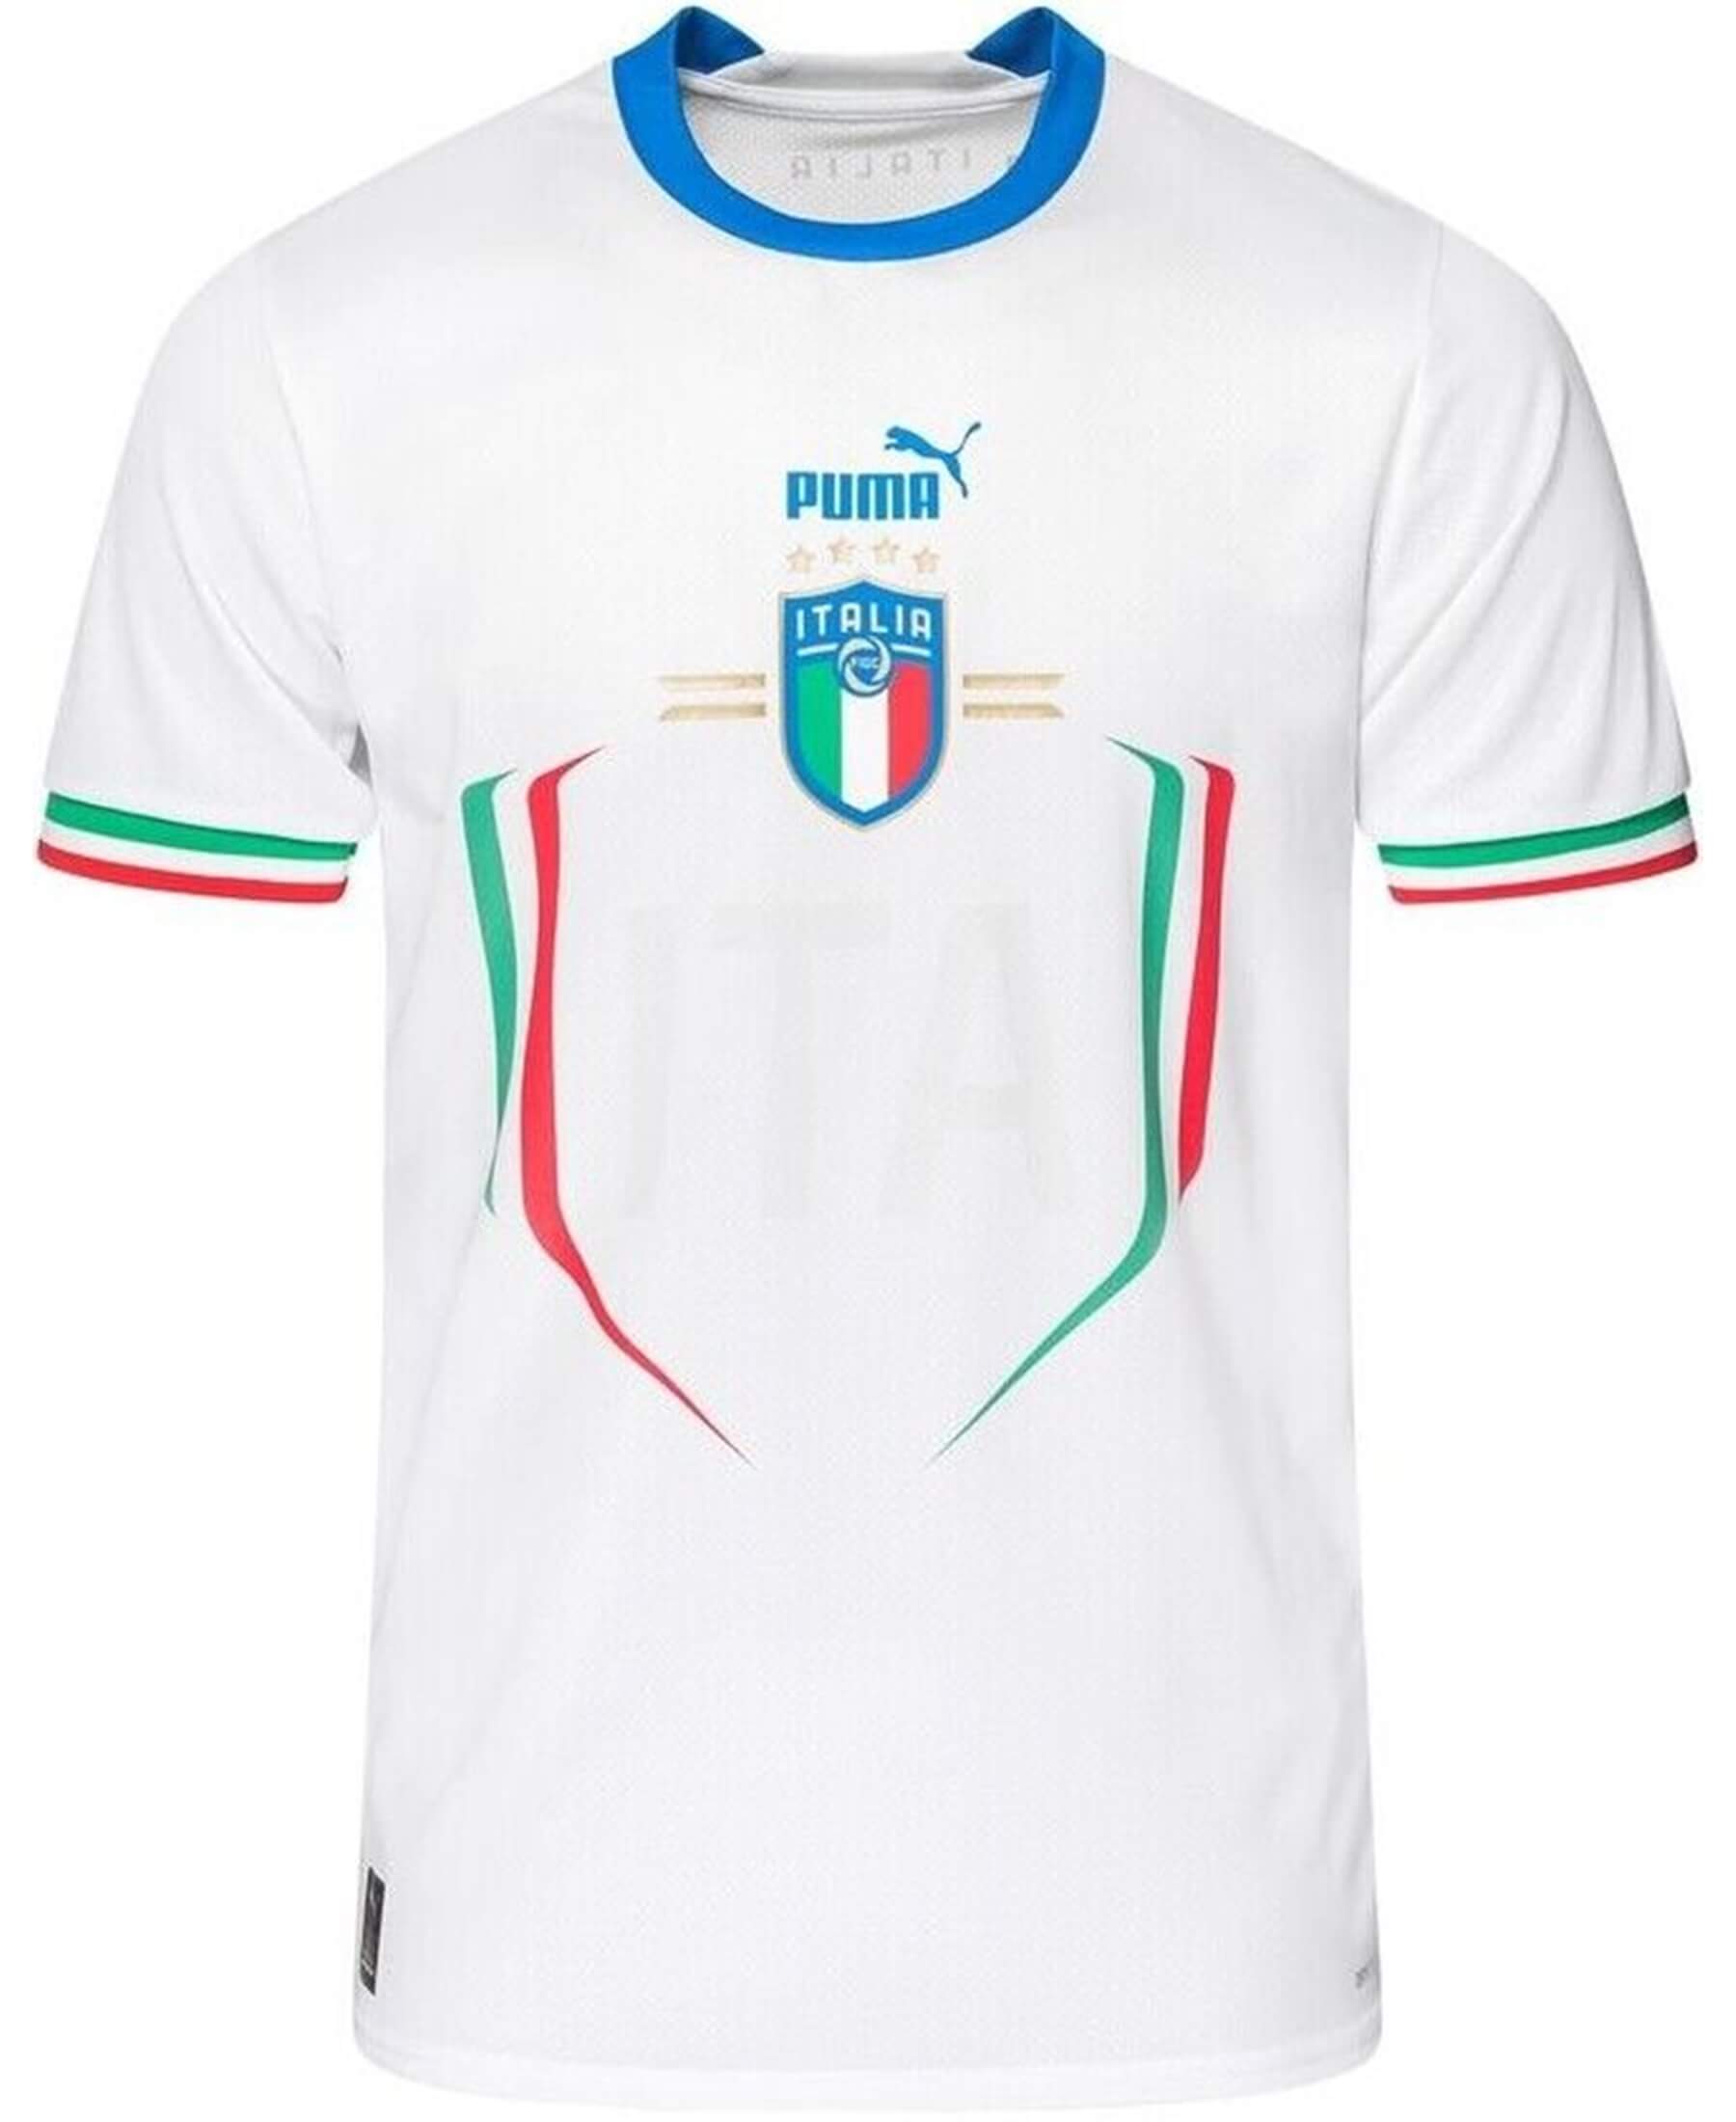 Puma Italien FIGC Replica Auswärtstrikot 2022/2023 [765650-02] - Entdecken Sie das offizielle Puma Italien FIGC Replica Auswärtstrikot für die Saison 2022/2023. Jetzt im SHOP4TEAMSPORT Onlineshop bestellen. Perfekt für Italien-Fans! Sichern Sie sich dieses hochwertige Auswärtstrikot und unterstützen Sie die Squadra Azzurra. Erleben Sie Stil und Authentizität mit diesem Puma Replica Trikot. Zeigen Sie Ihre Begeisterung für das italienische Nationalteam und repräsentieren Sie Italien in der kommenden Saison.